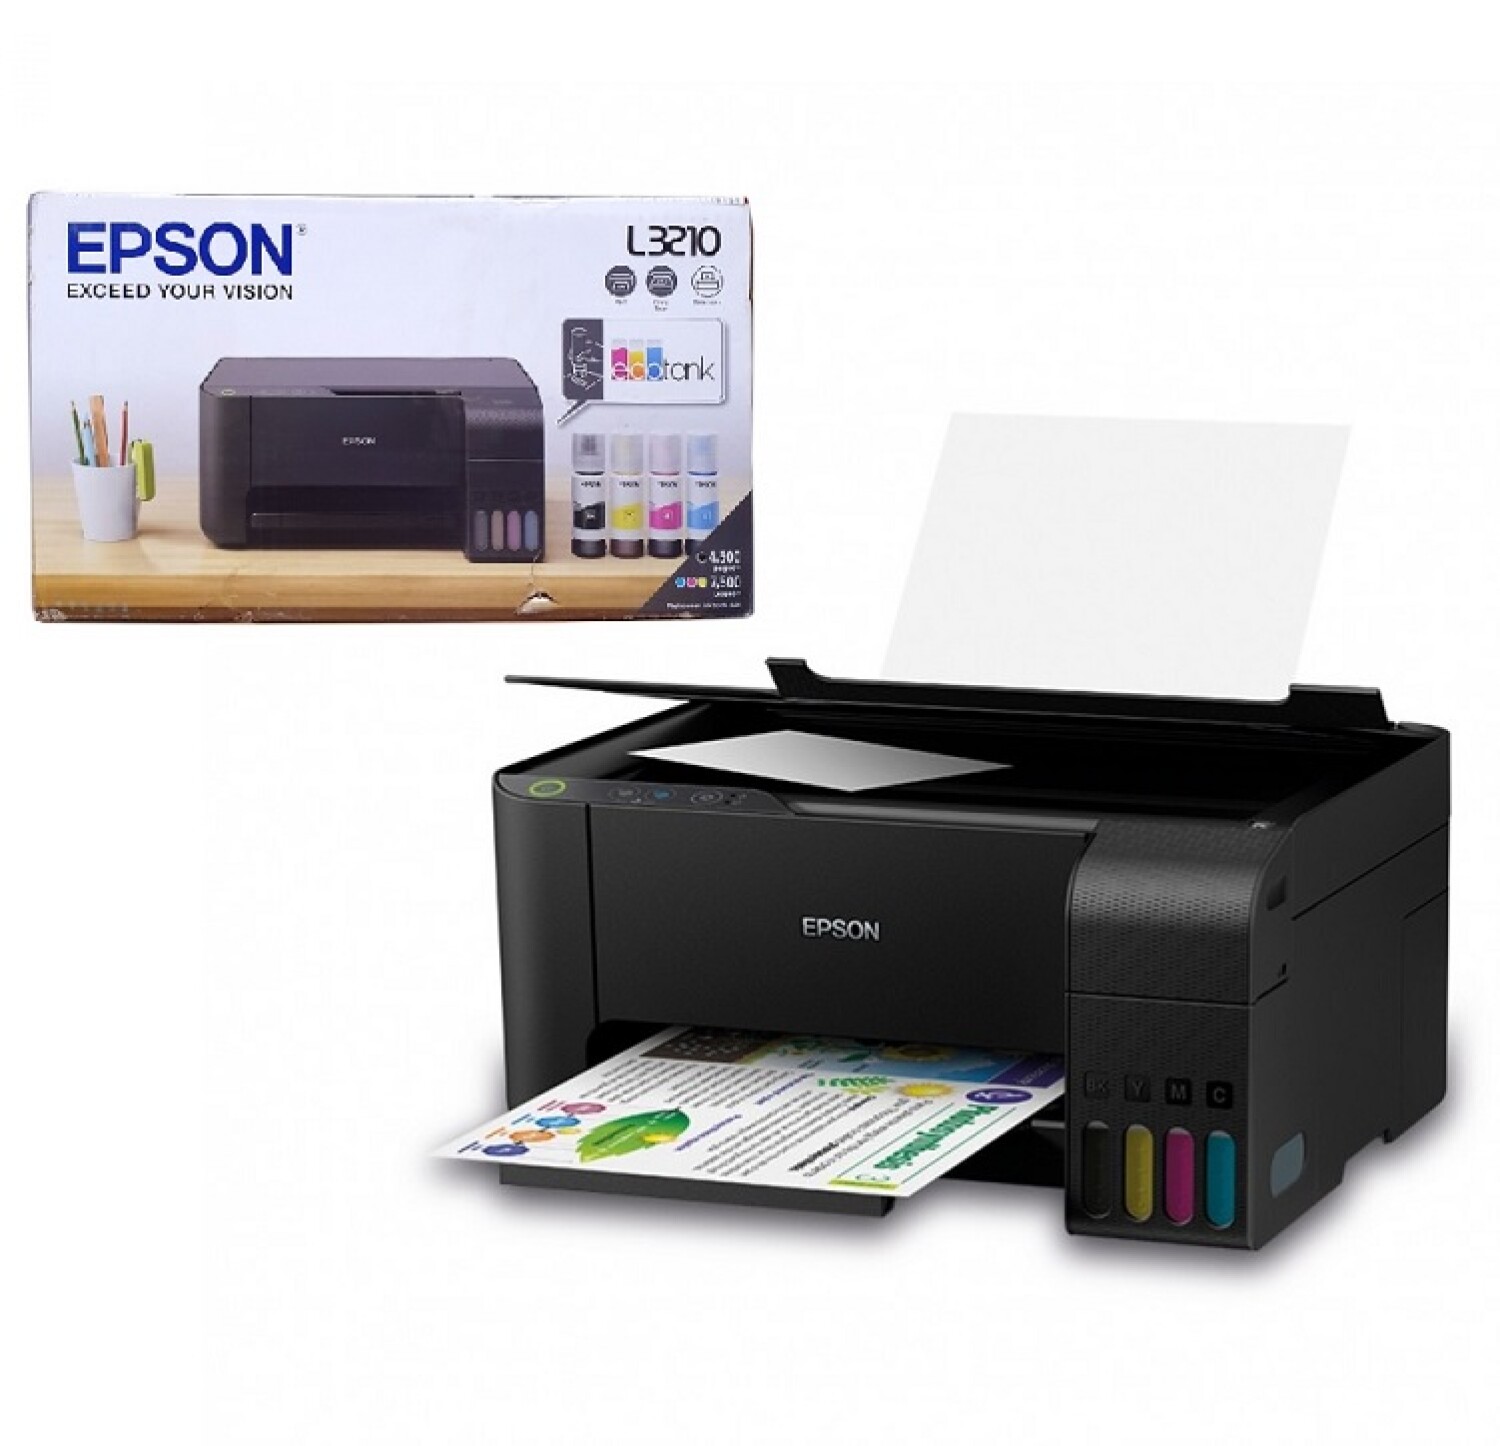 Impresora Multifunción Epson L3210 con Sistema Continuo Original